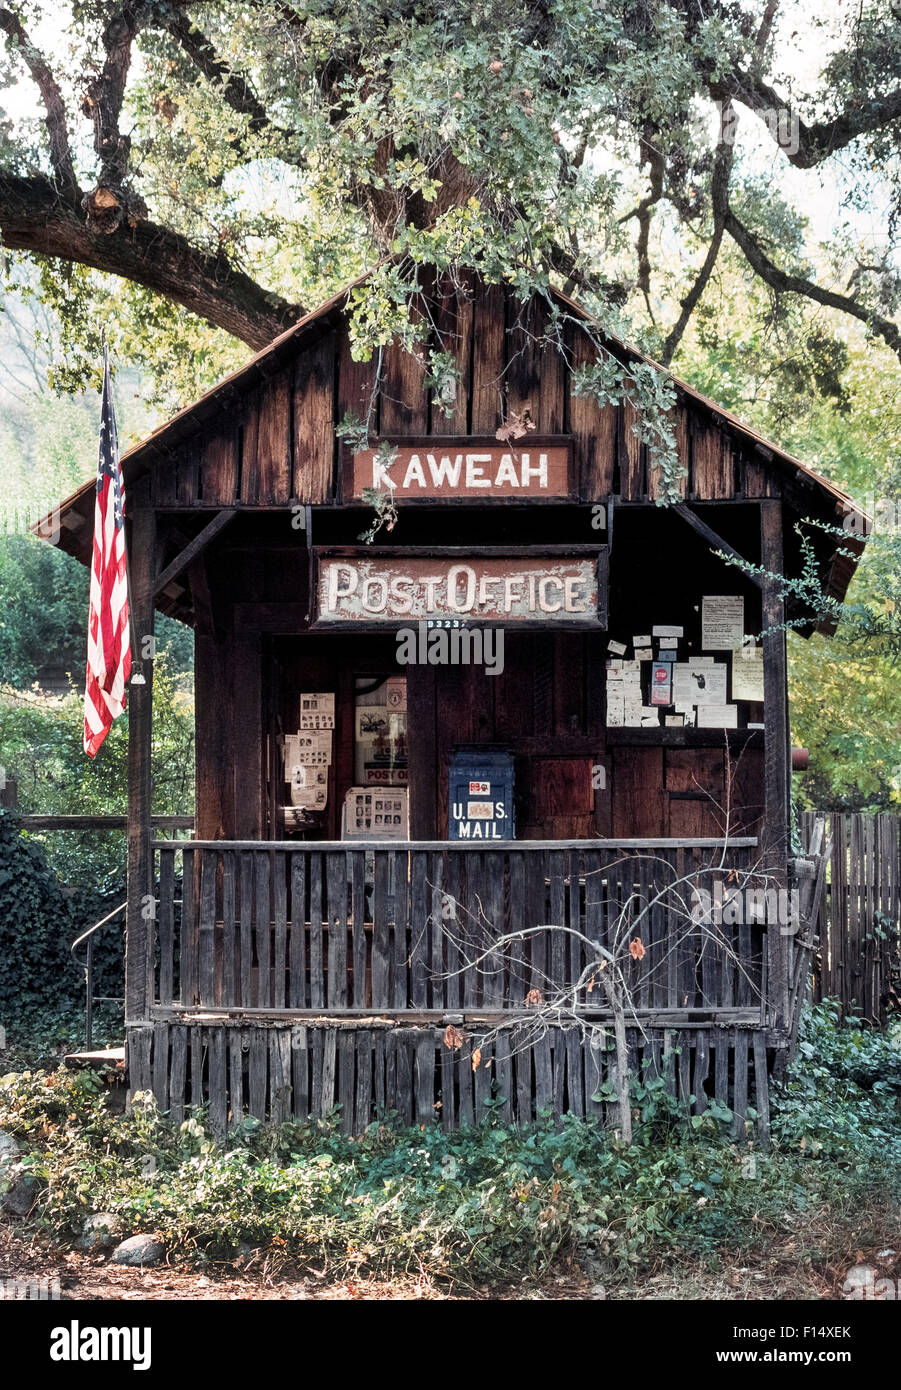 Die winzigen Kaweah Post betreibt seit 1910 in der Nähe der südlichen Einfahrt zum Sequoia und Kings Canyon National Parks ein paar Meilen von Three Rivers, Kalifornien, USA. Die historischen 12 x 15 Fuß Cedar und Redwood-Gebäude soll das kleinste Postamt der USA seit mehr als einem Jahrhundert im Dauereinsatz. Stockfoto